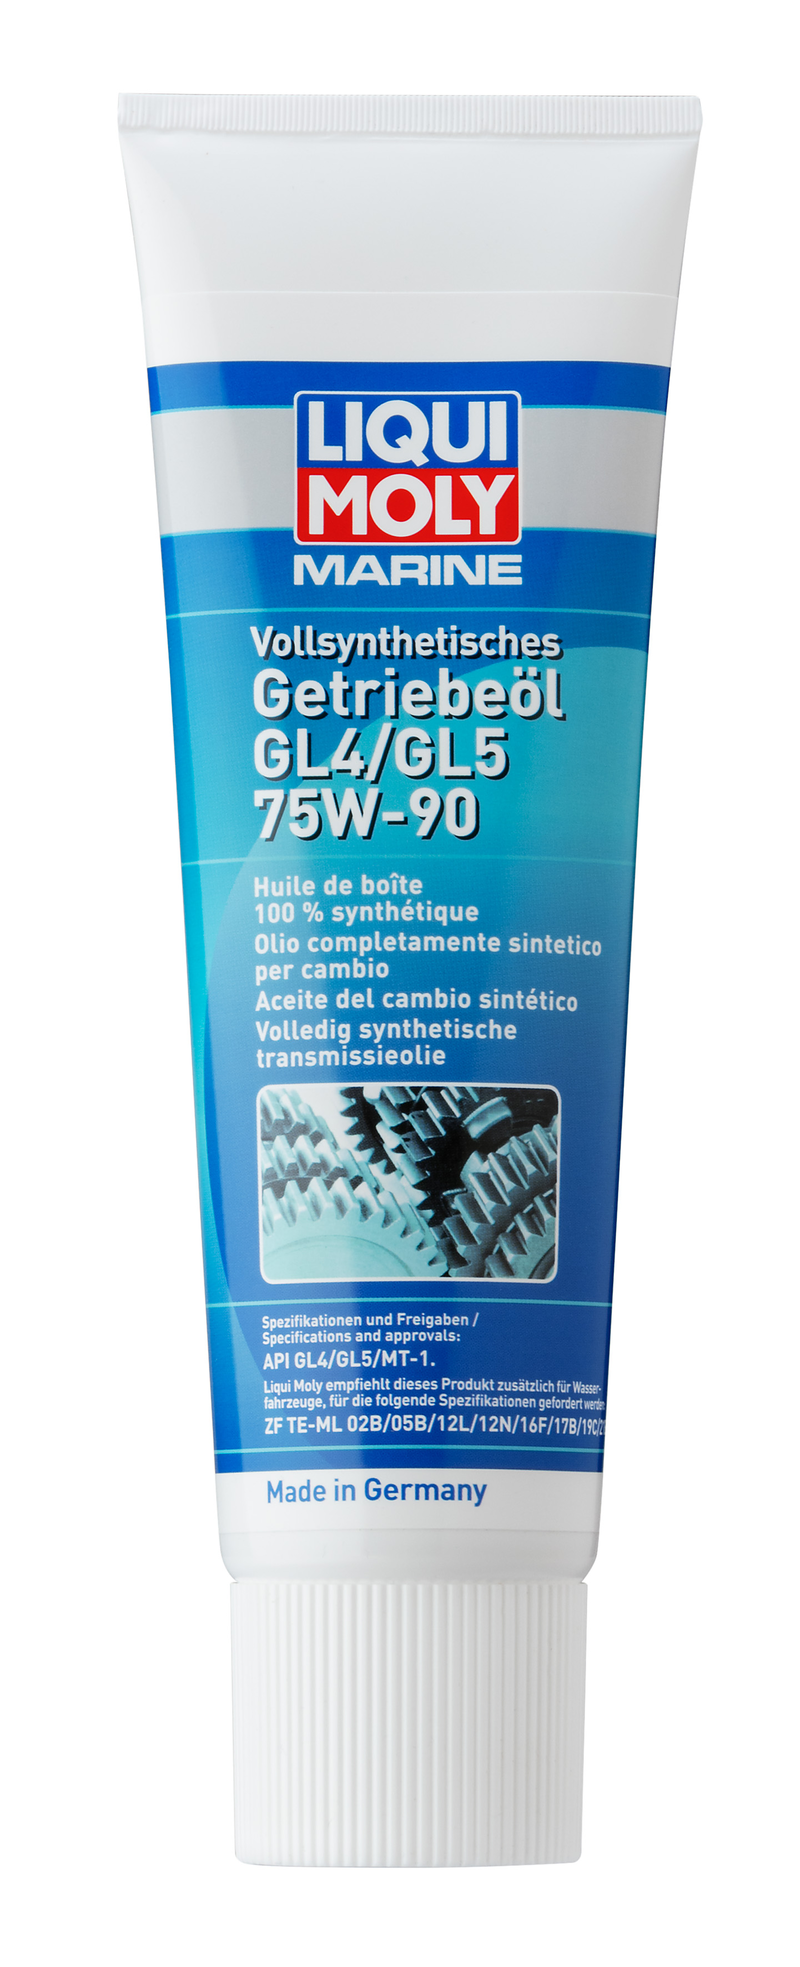 Marine Aceite del cambio sintético GL4/GL5 75W-90 (250 ML) Liqui Moly